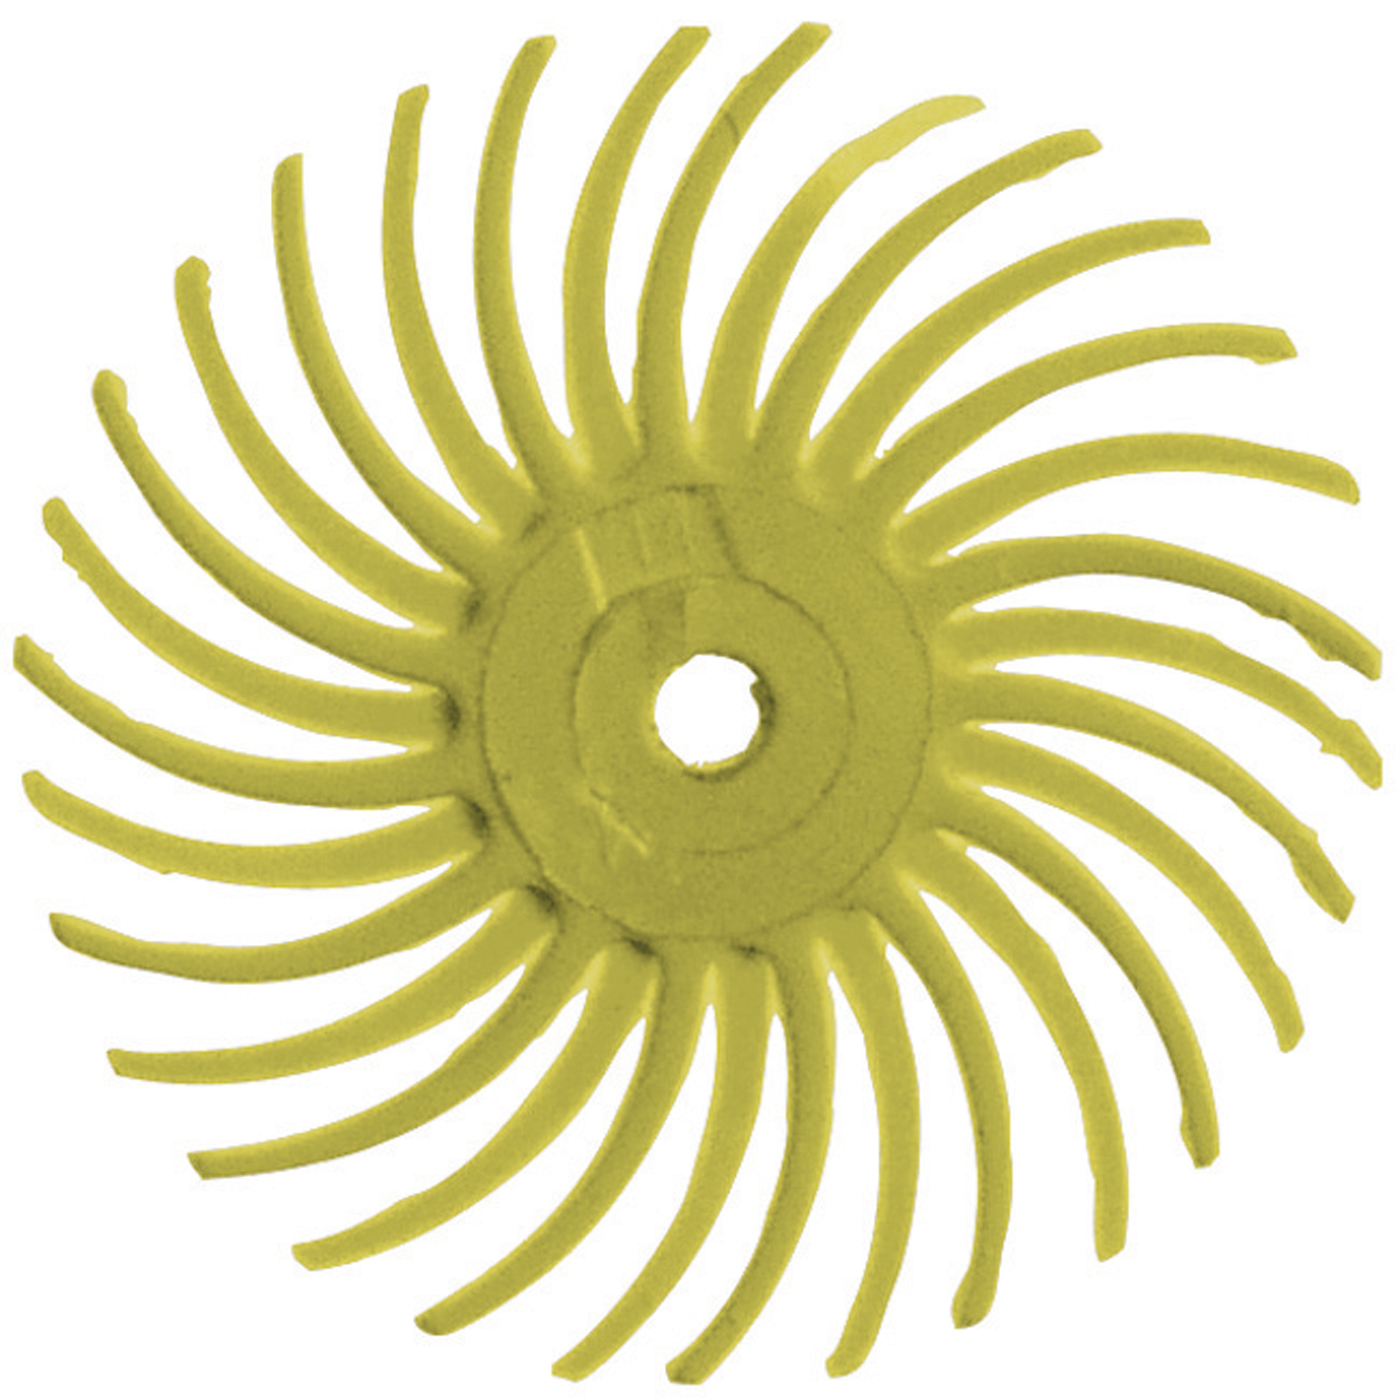 Habras Discs, gelb, grob (K 80), ø 19 mm - 4 Stück